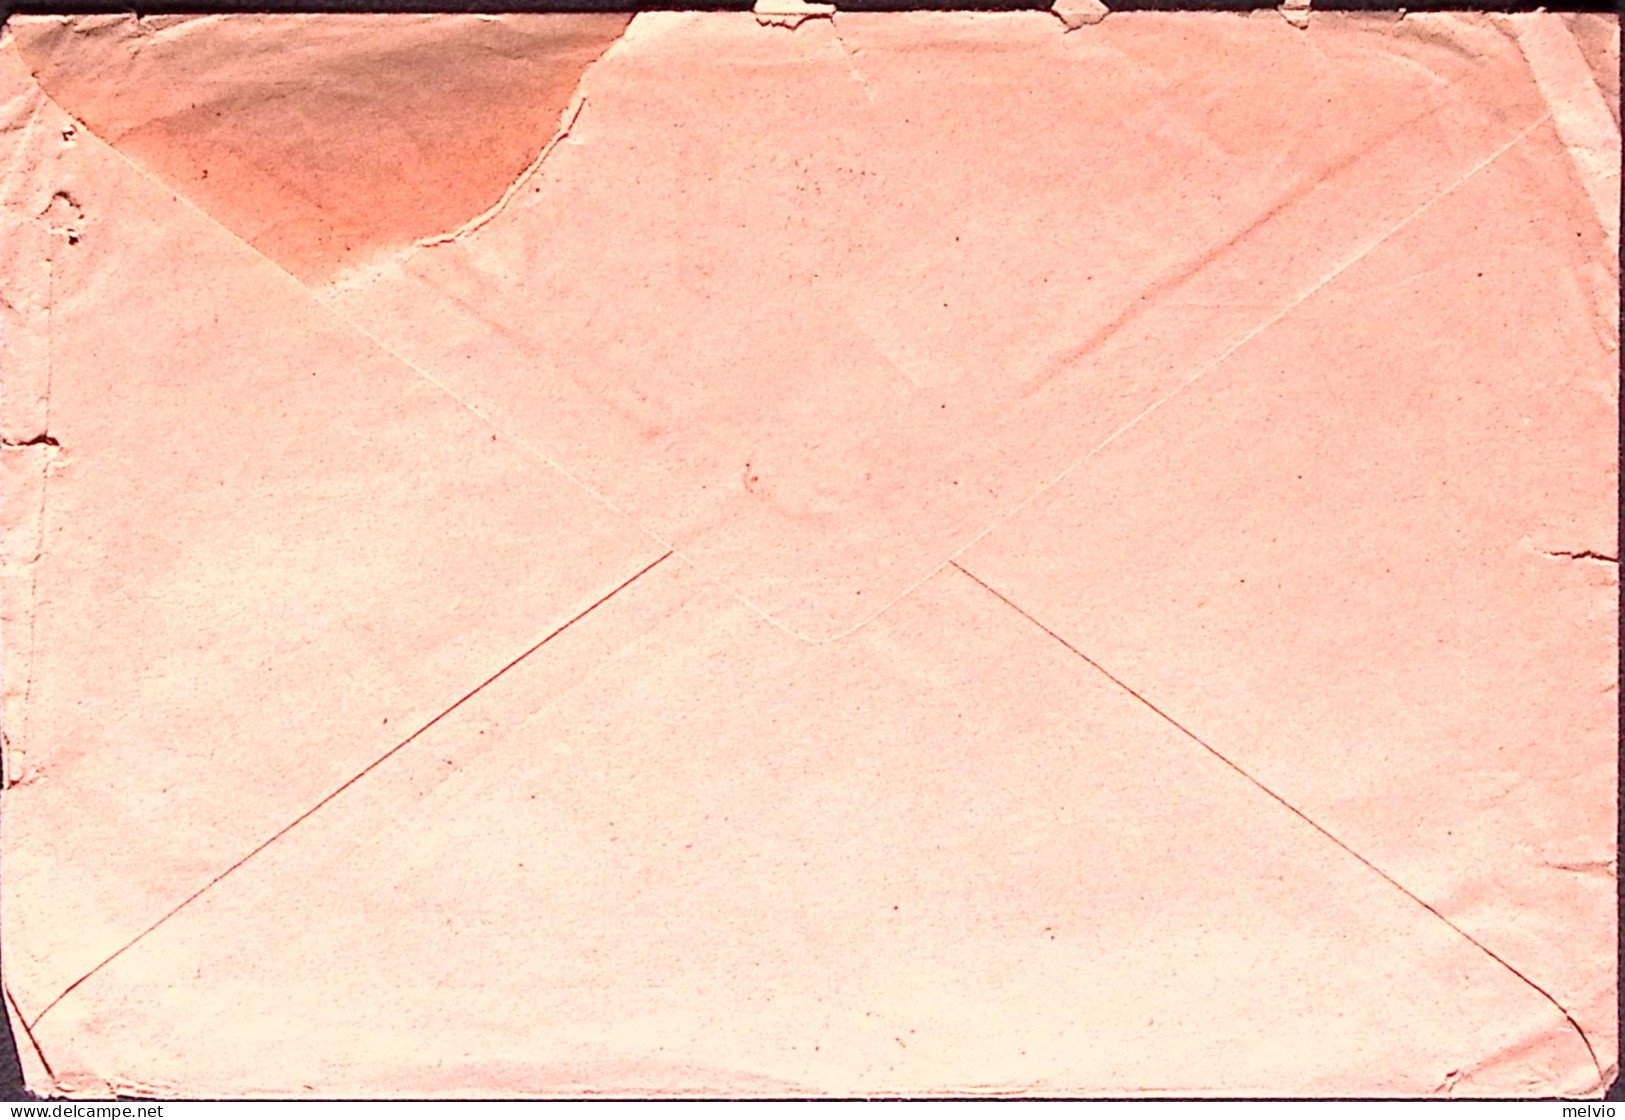 1941-AL MITTENTE/NON POTUTA RECAPITARE/PER EVENTI BELLICI Cartella Su Busta Bres - Poststempel